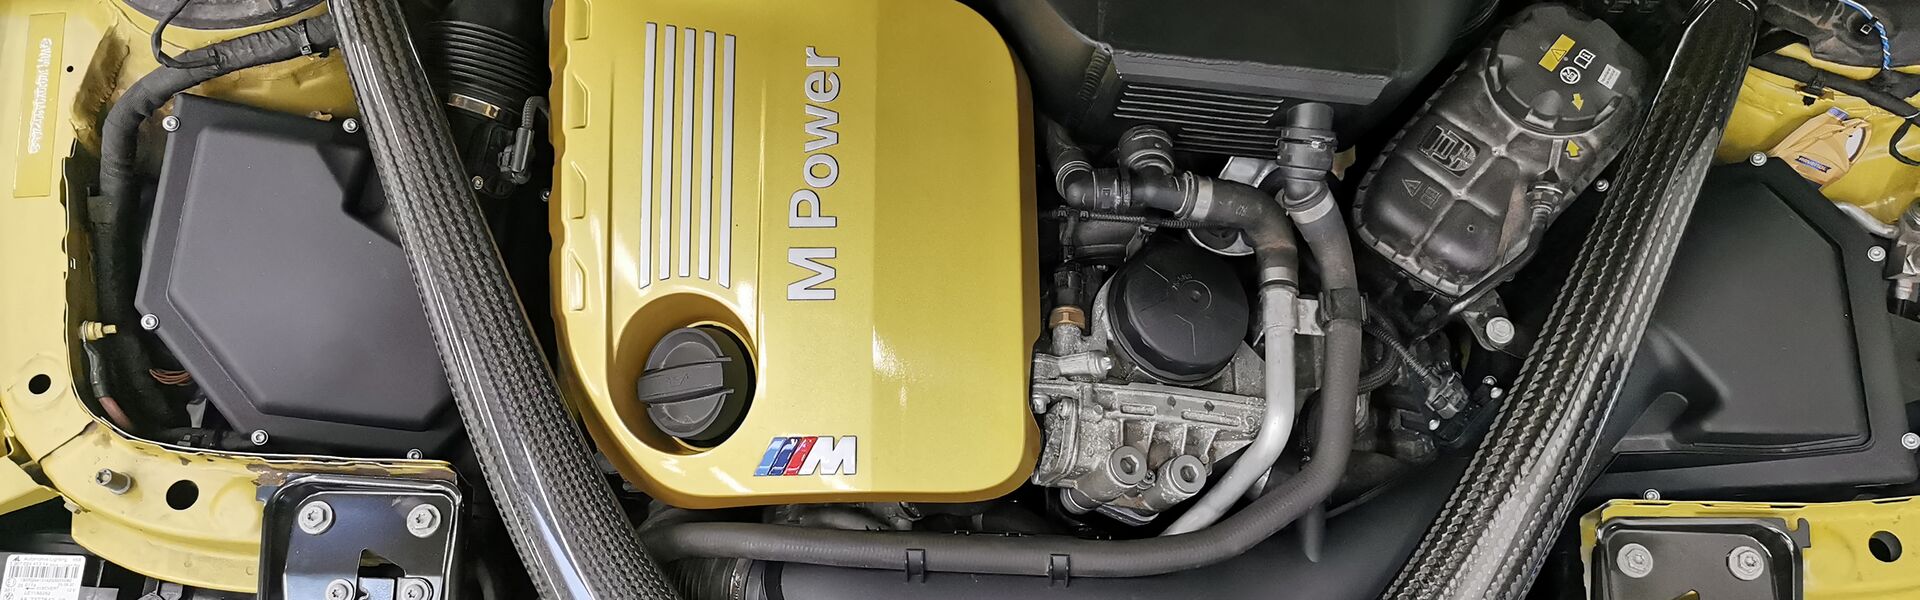 Engine McLaren 12C / 12C SPIDER